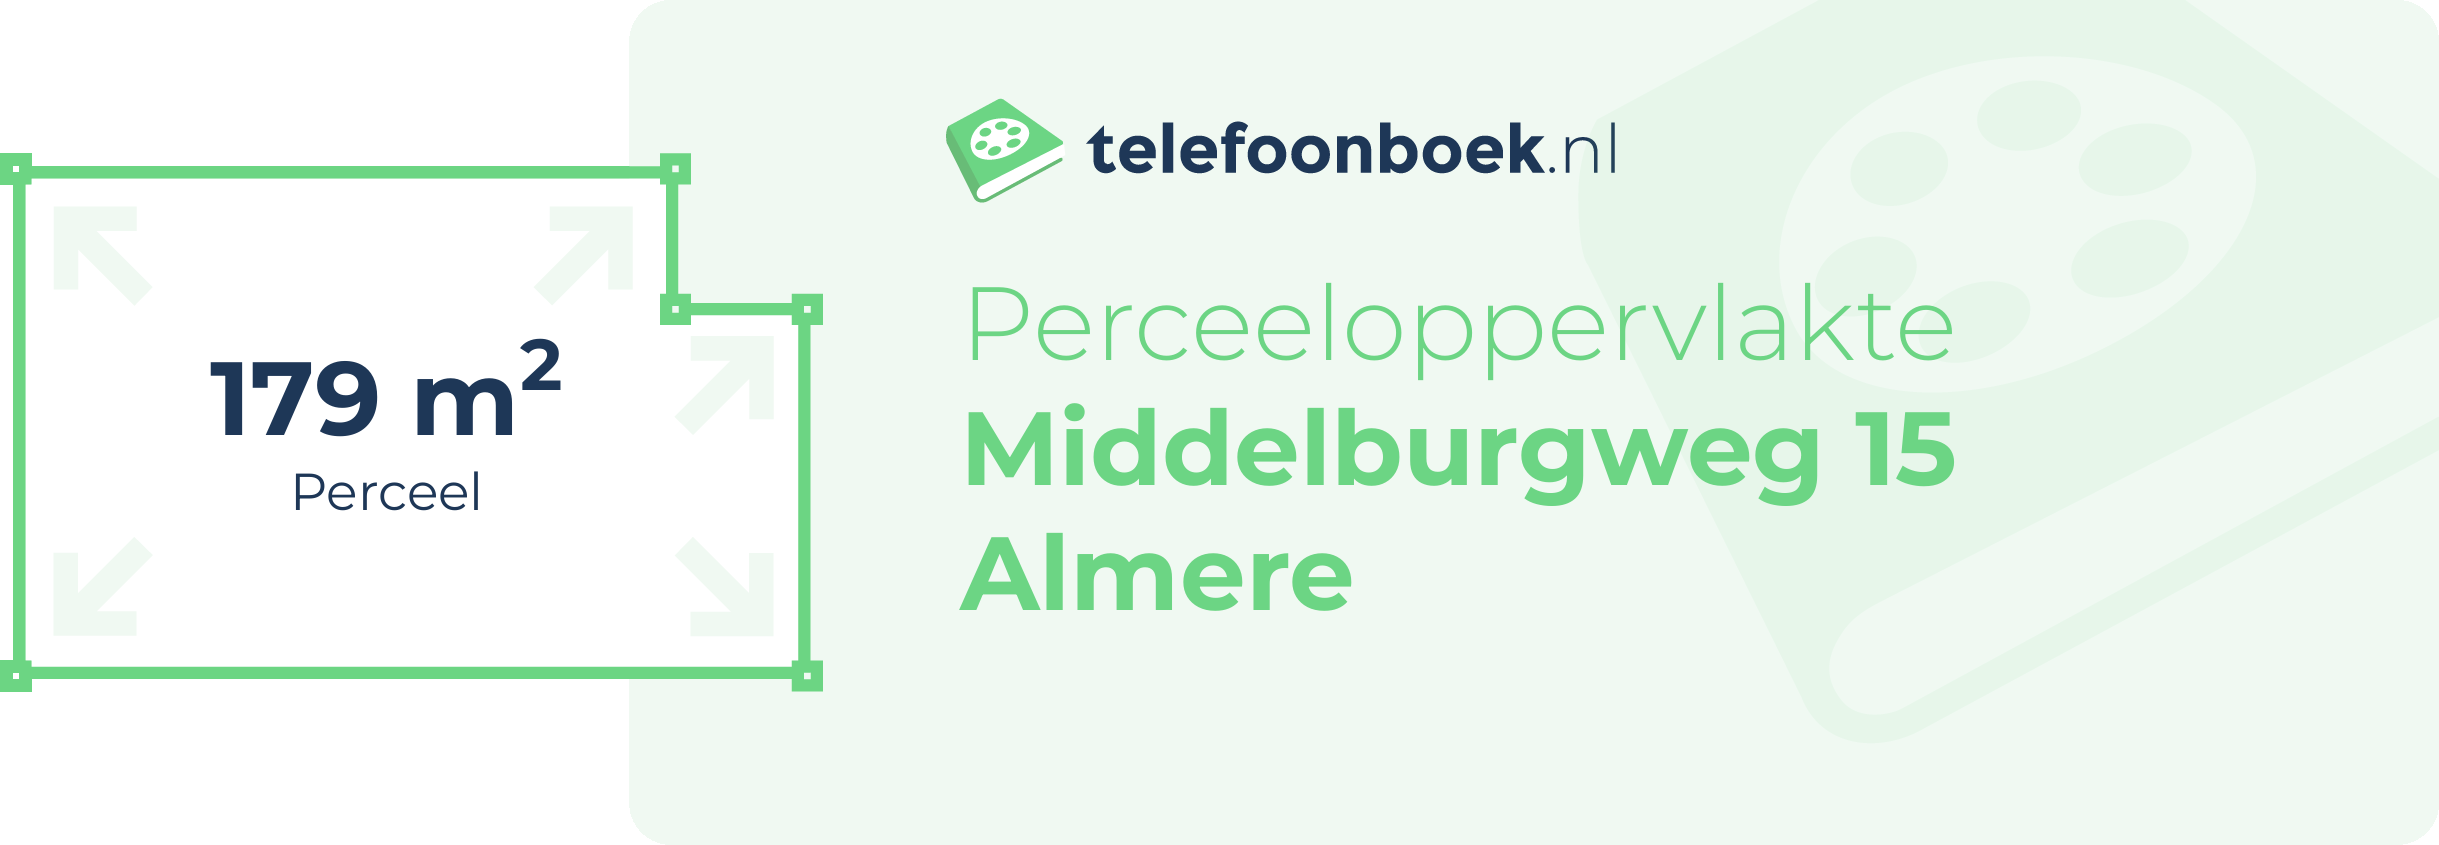 Perceeloppervlakte Middelburgweg 15 Almere